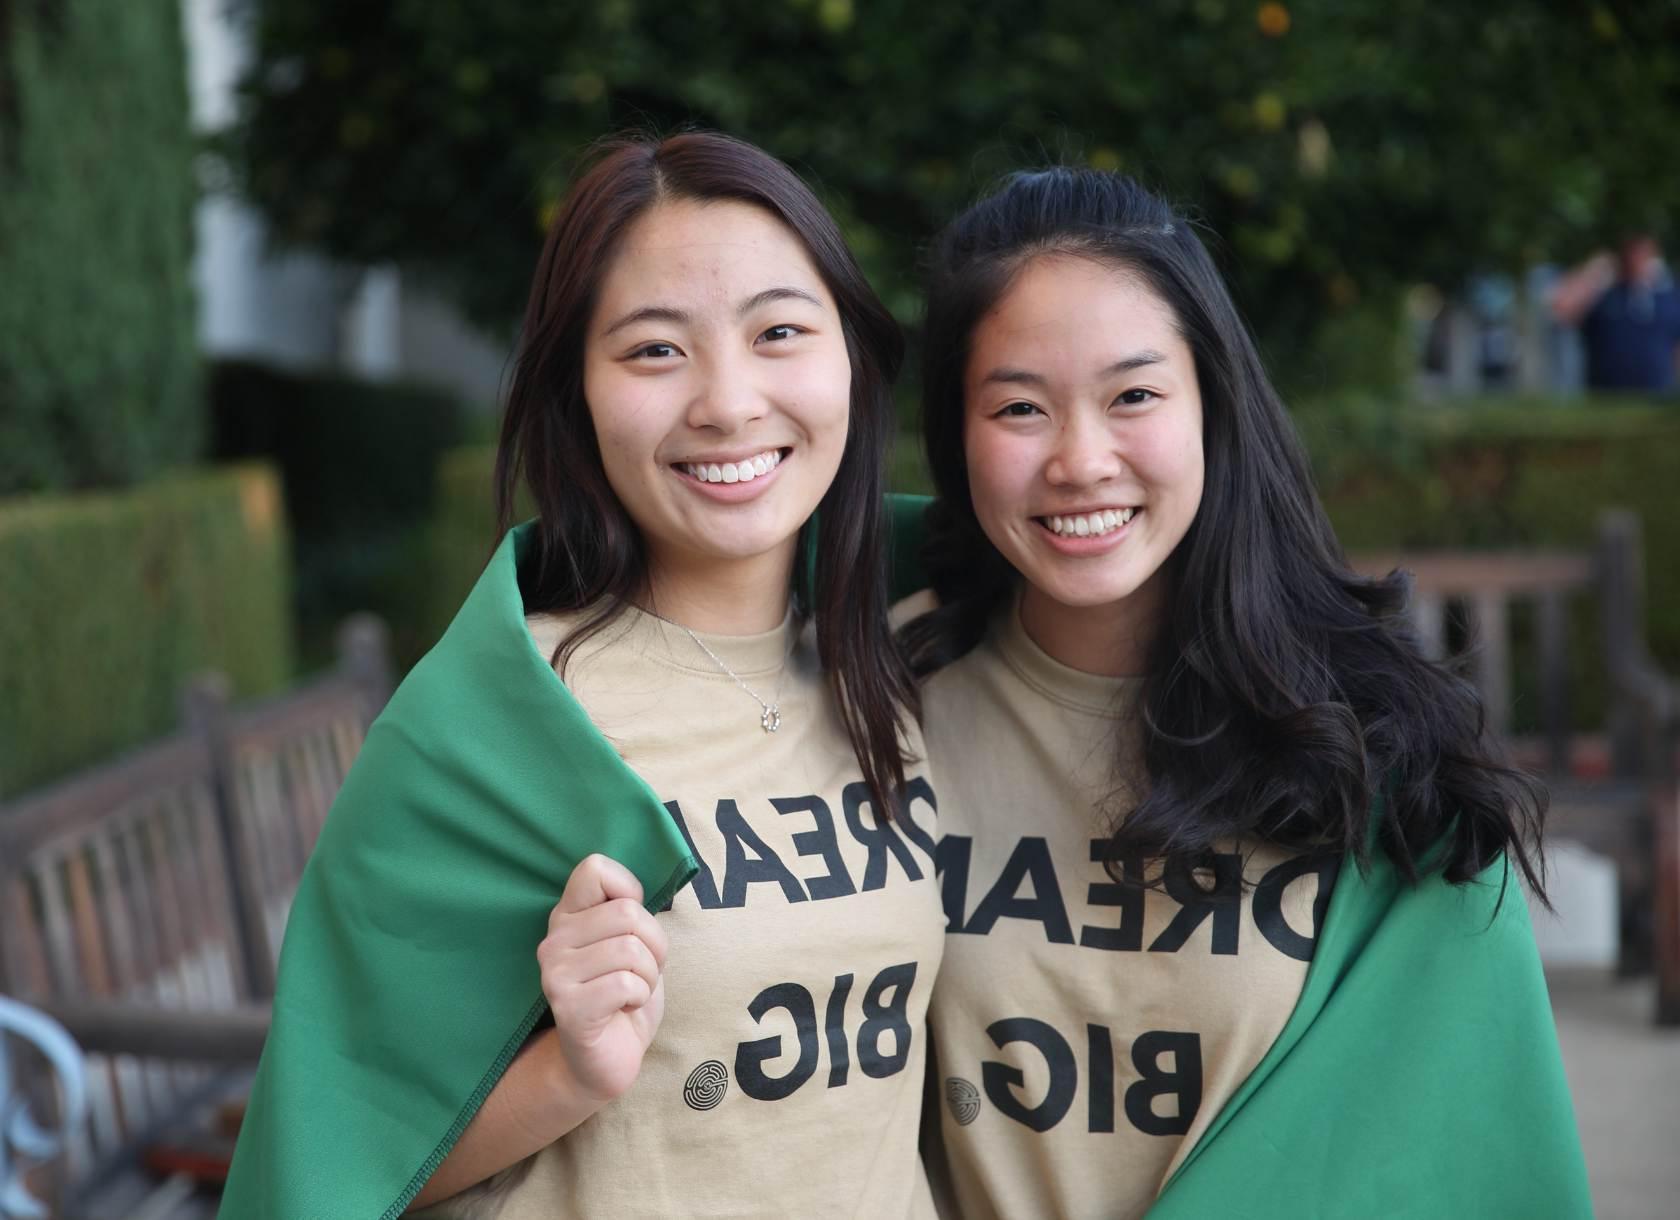 两名学生穿着印有“远大梦想”字样的衬衫，围着斗篷